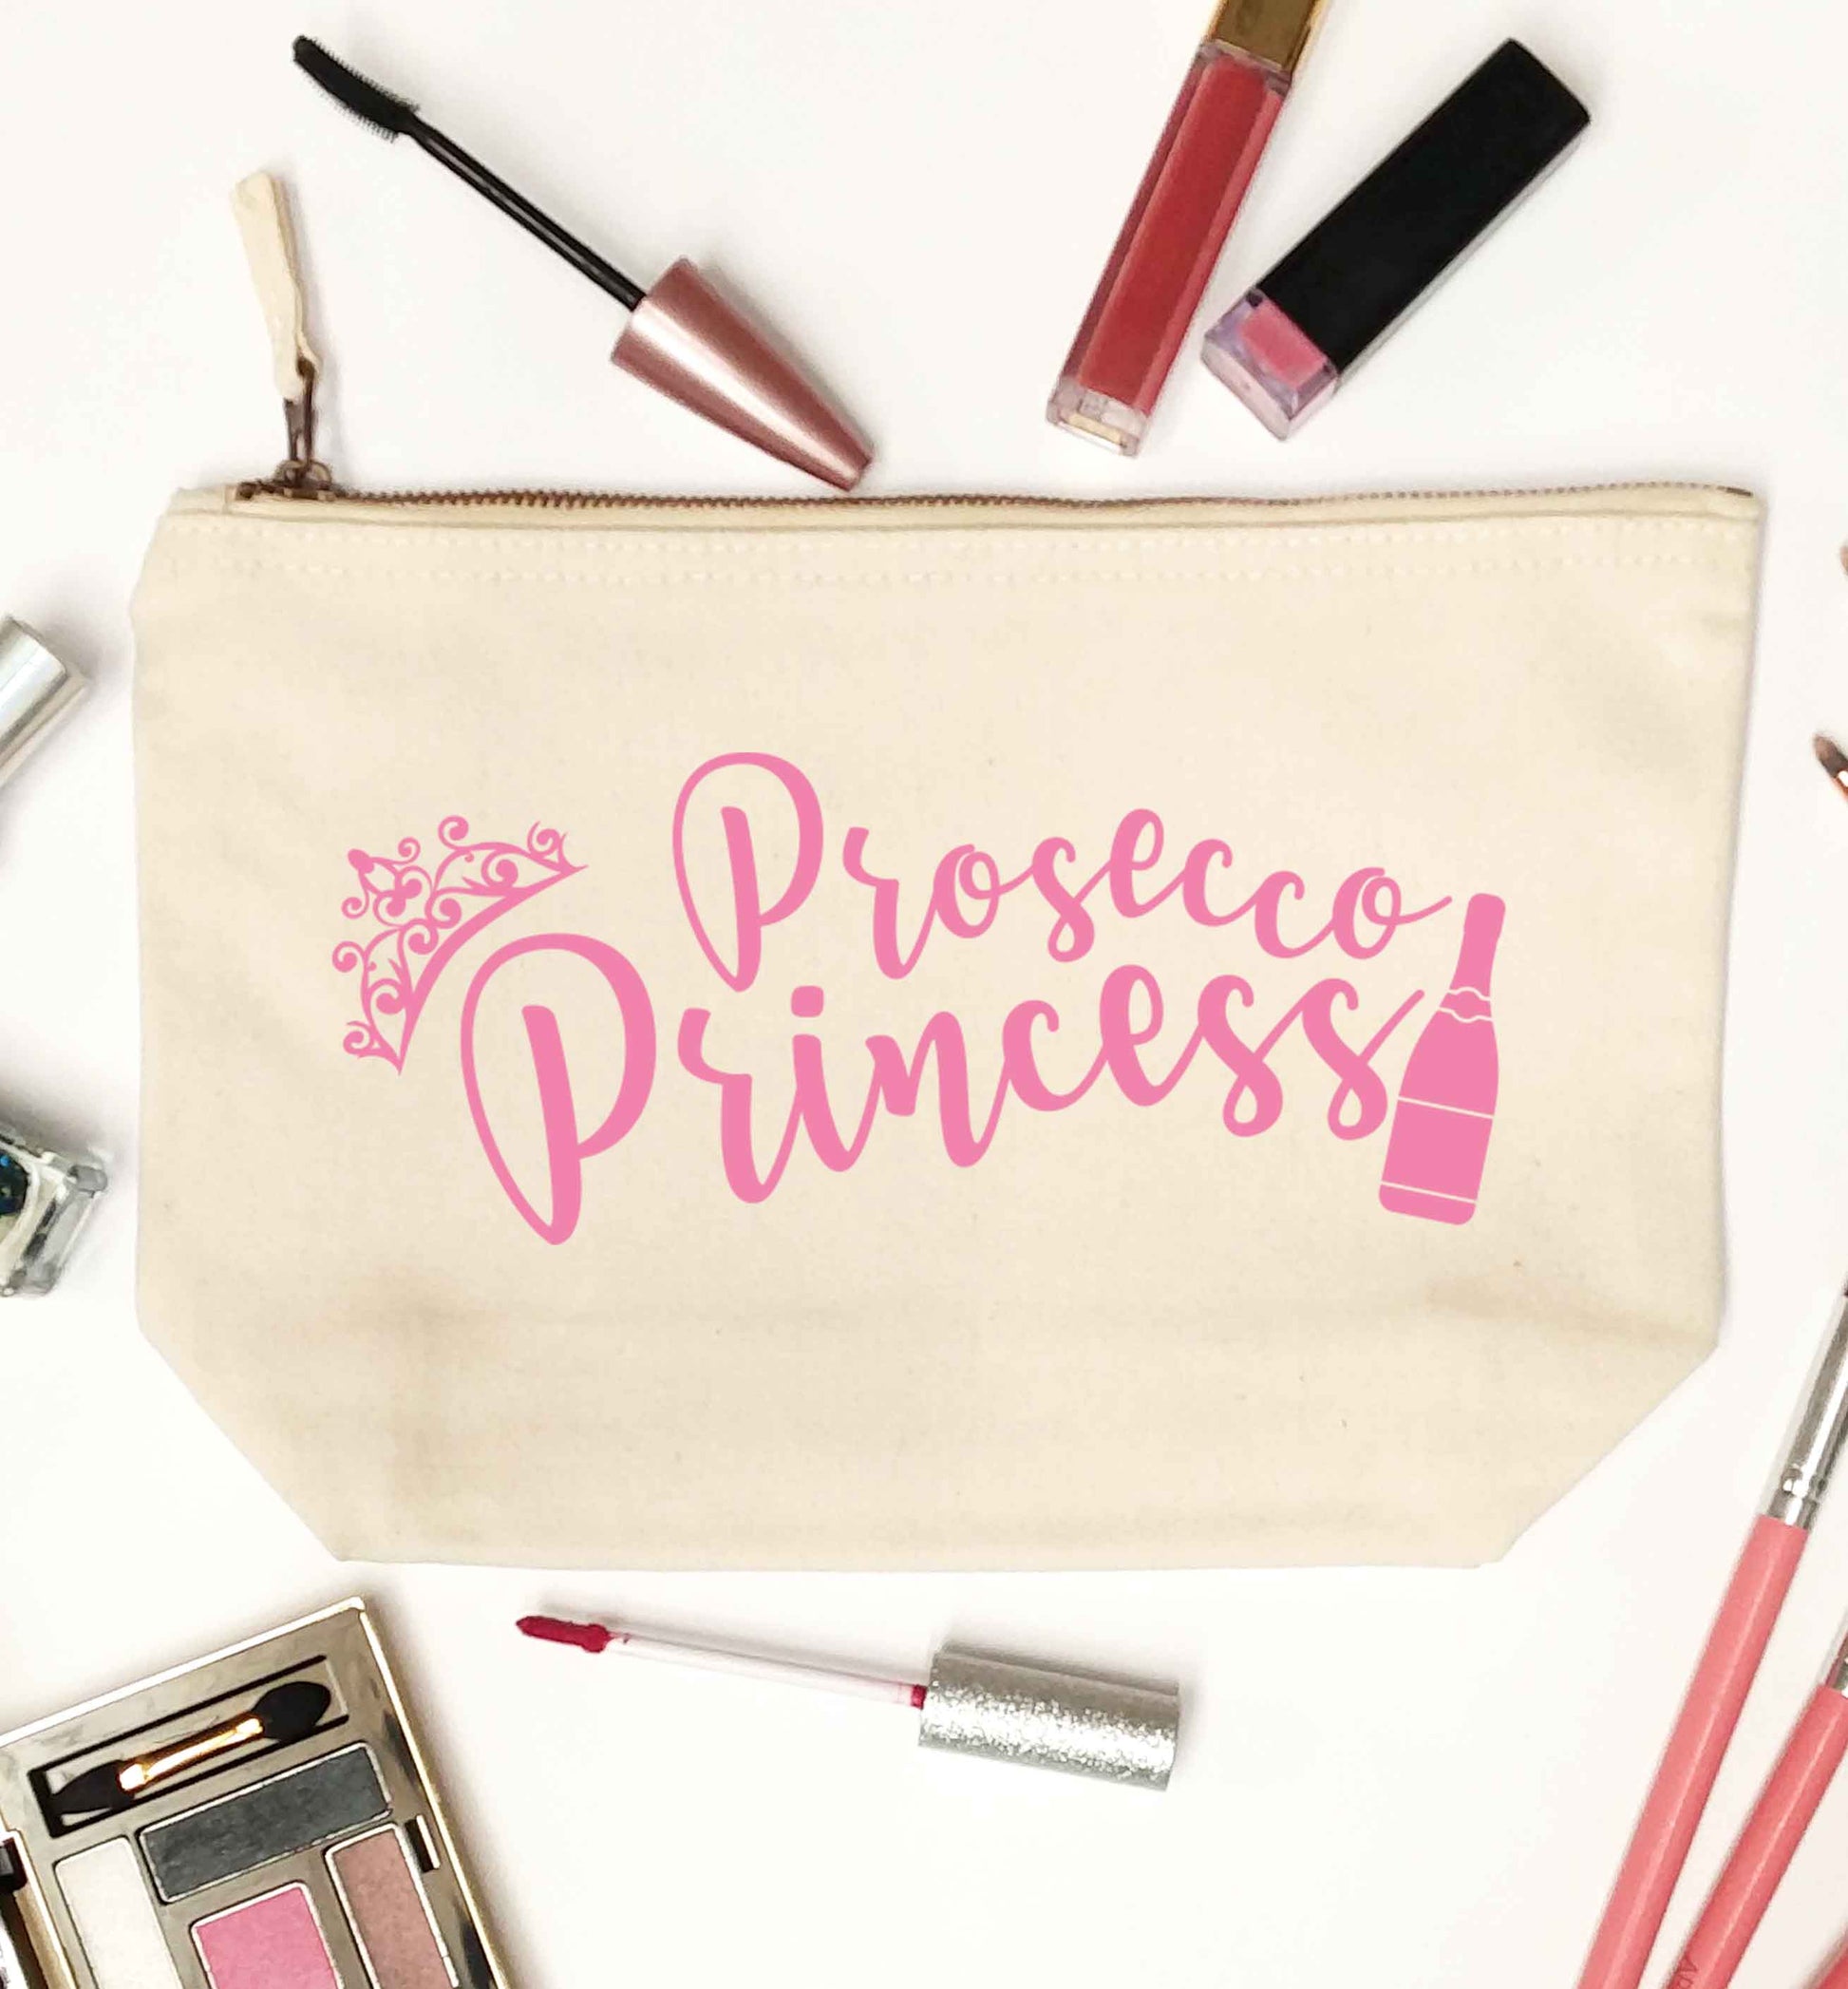 Prosecco princess natural makeup bag